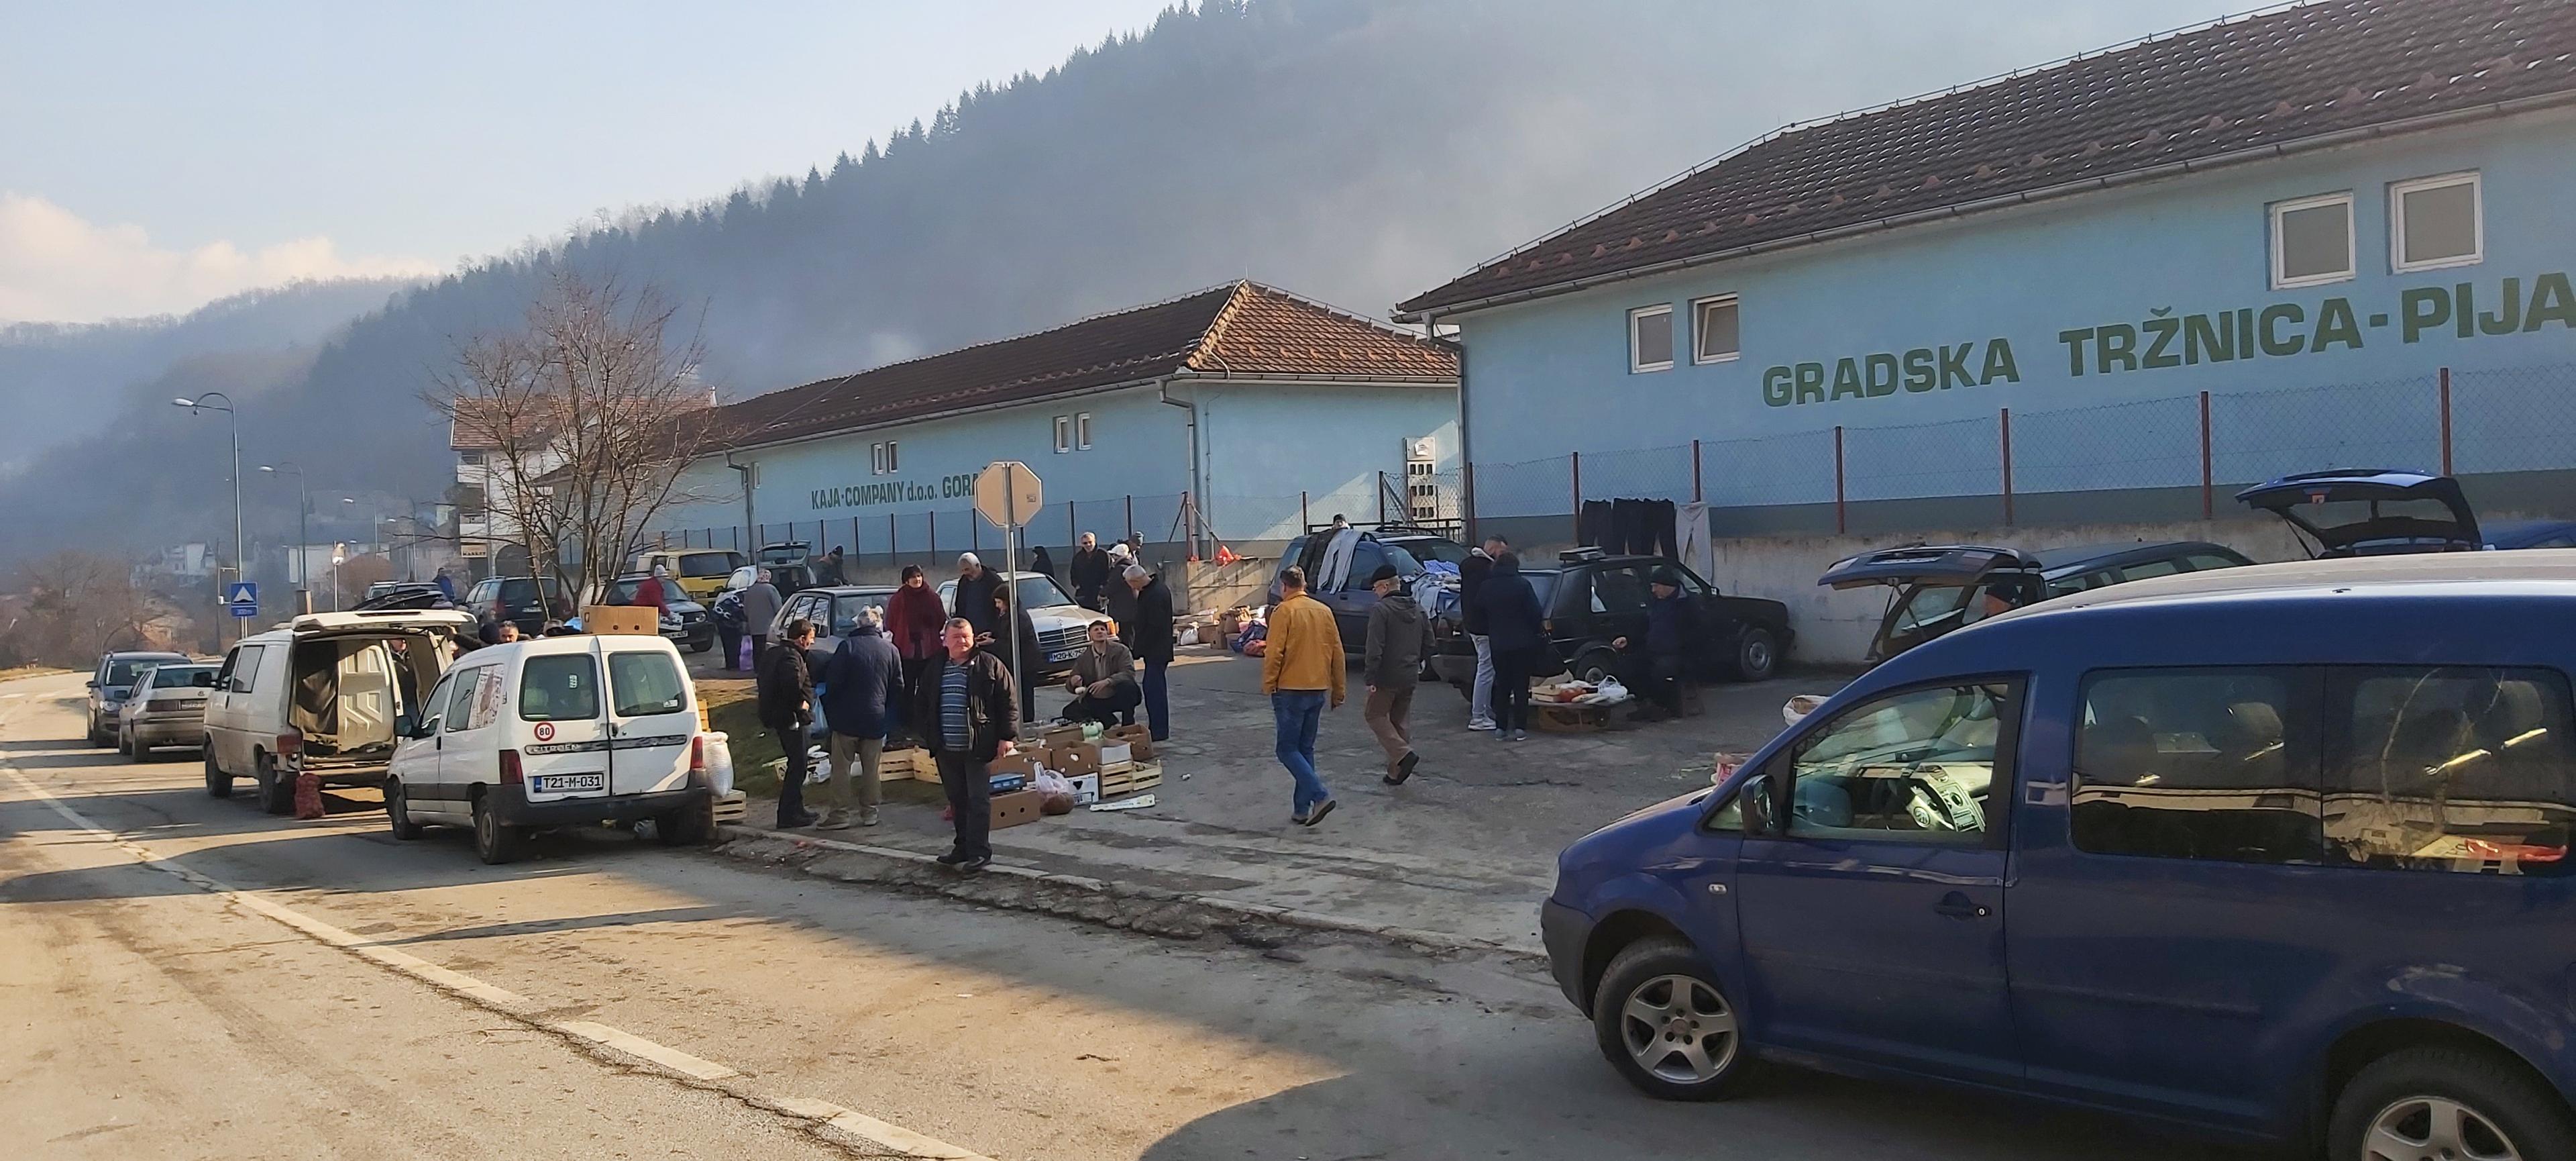 Gradska tržnica u Goraždu zapečaćena je u akciji Porezne uprave FBiH - Avaz